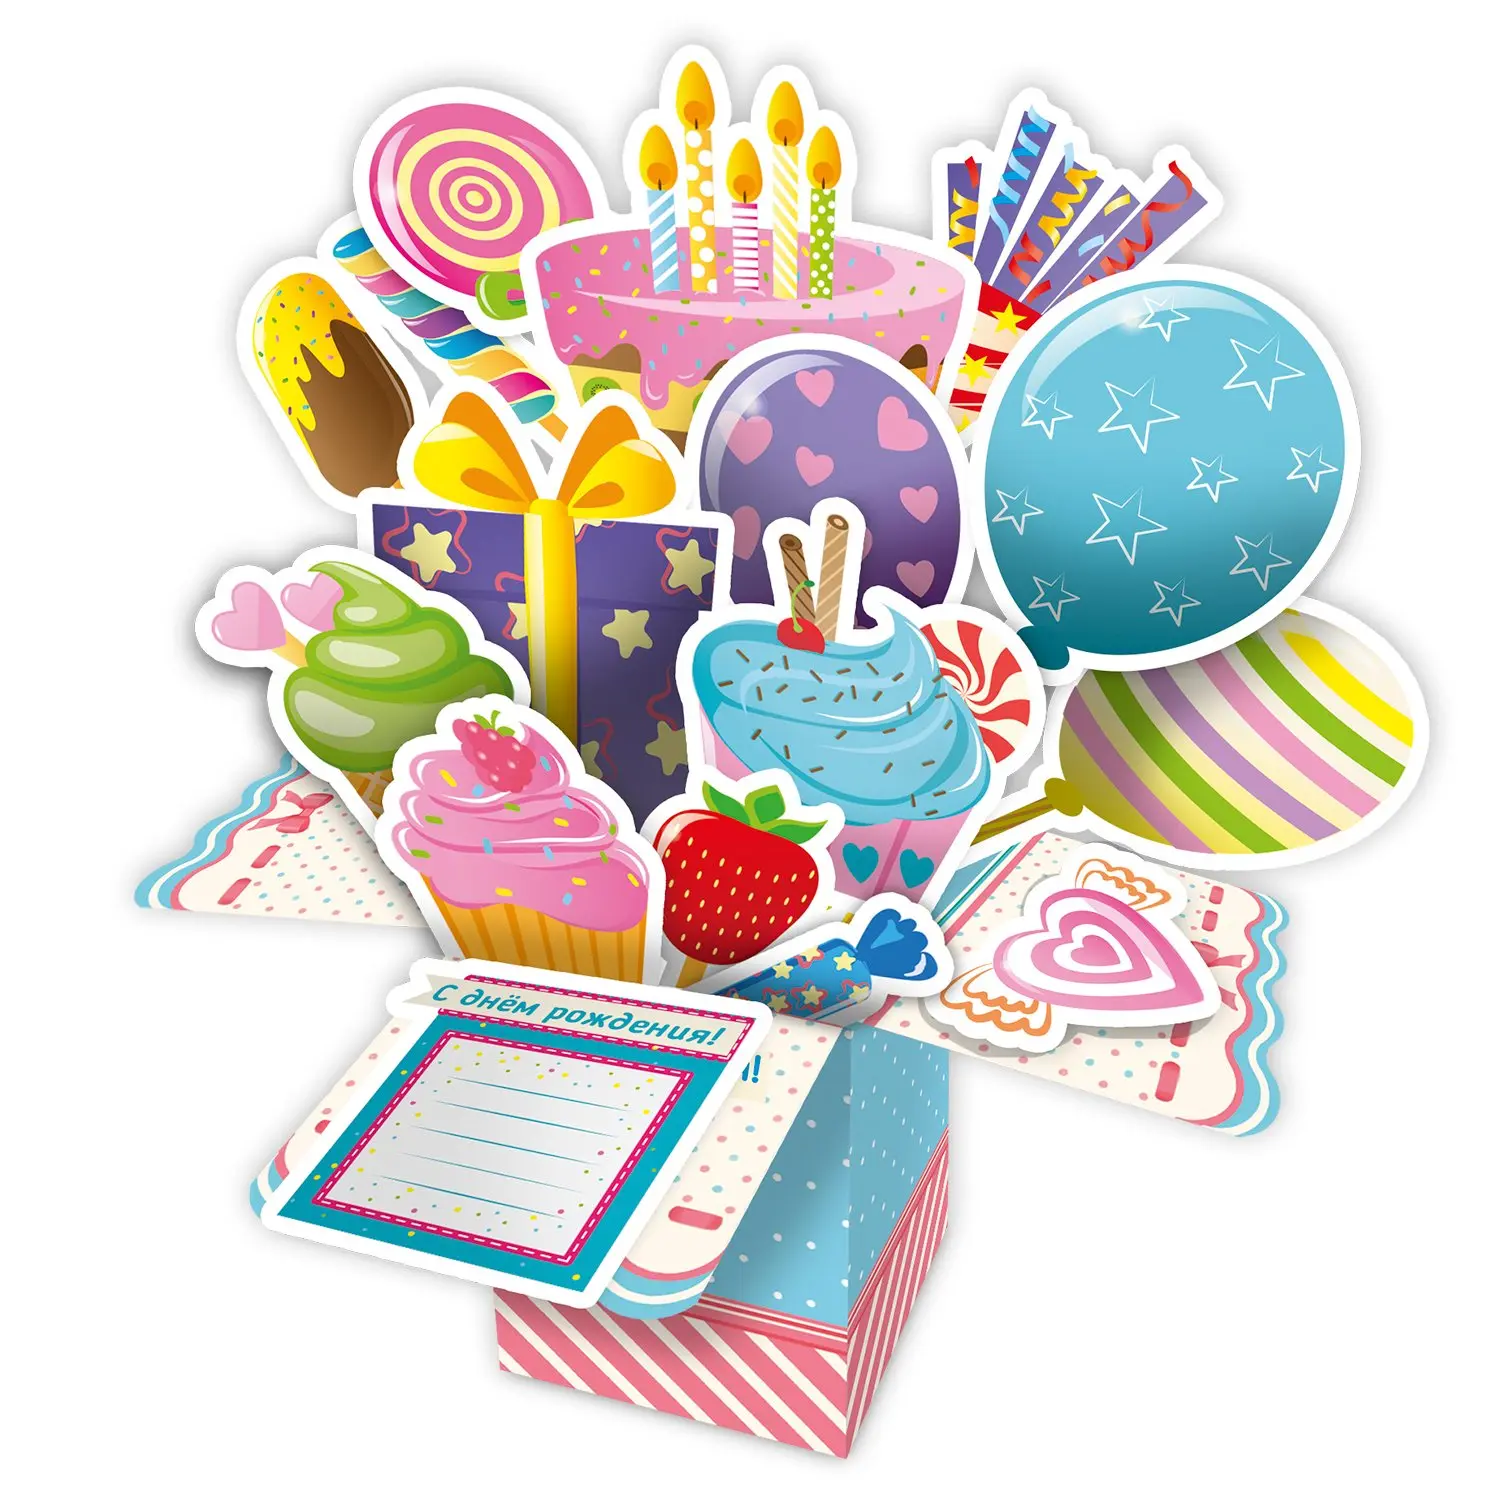 3D-открытка "С днем рождения!" - фото